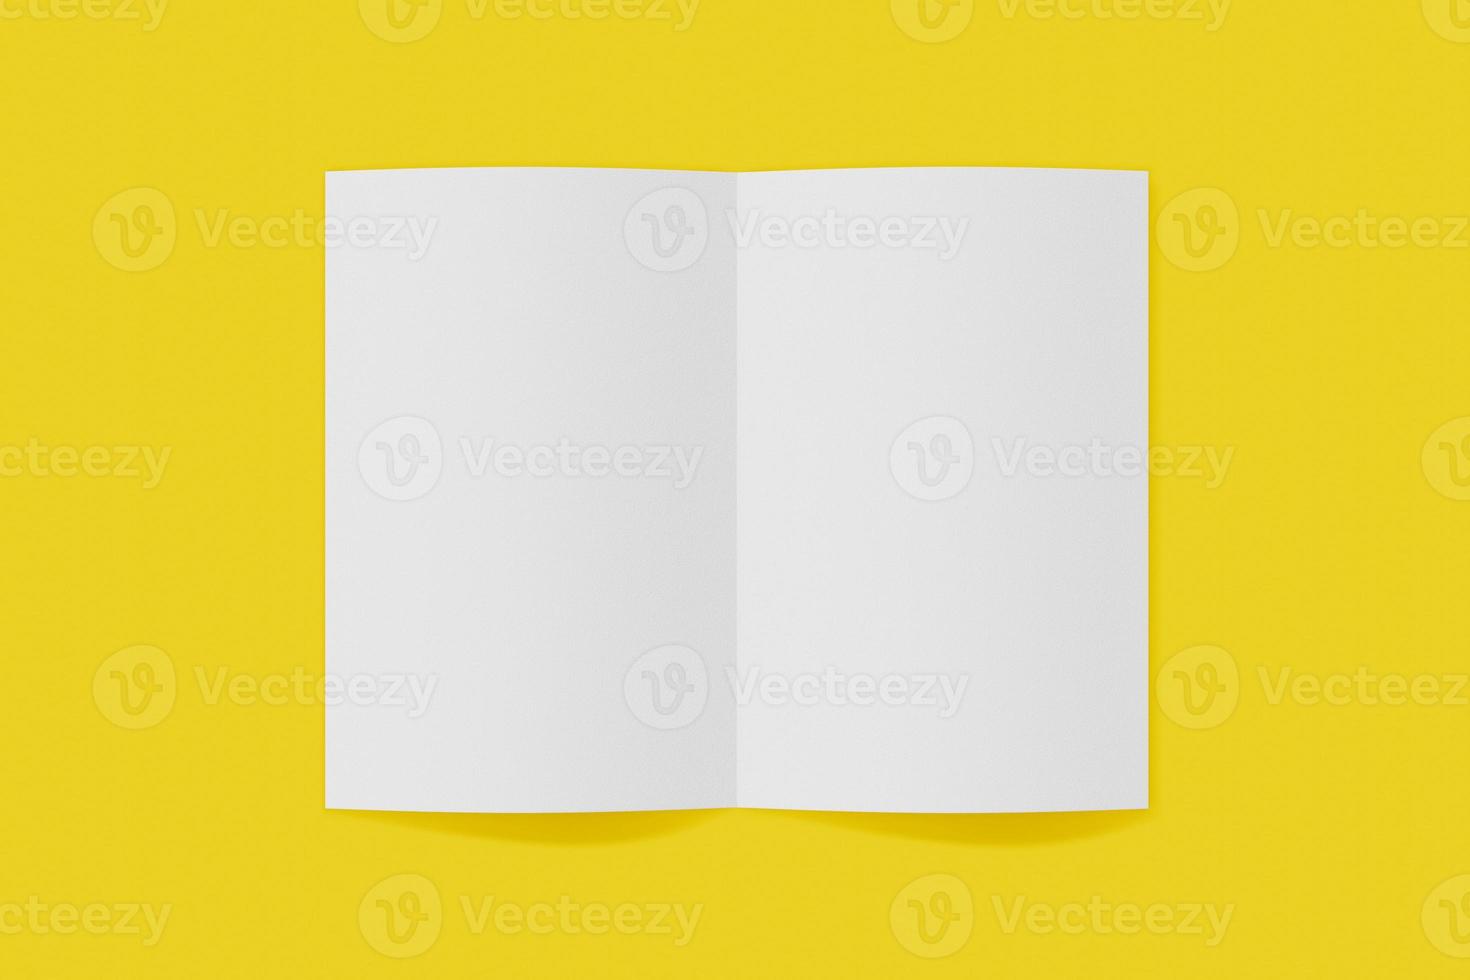 folleto vertical de maqueta, folleto, invitación aislado en un fondo amarillo con tapa blanda y sombra realista. representación 3d foto